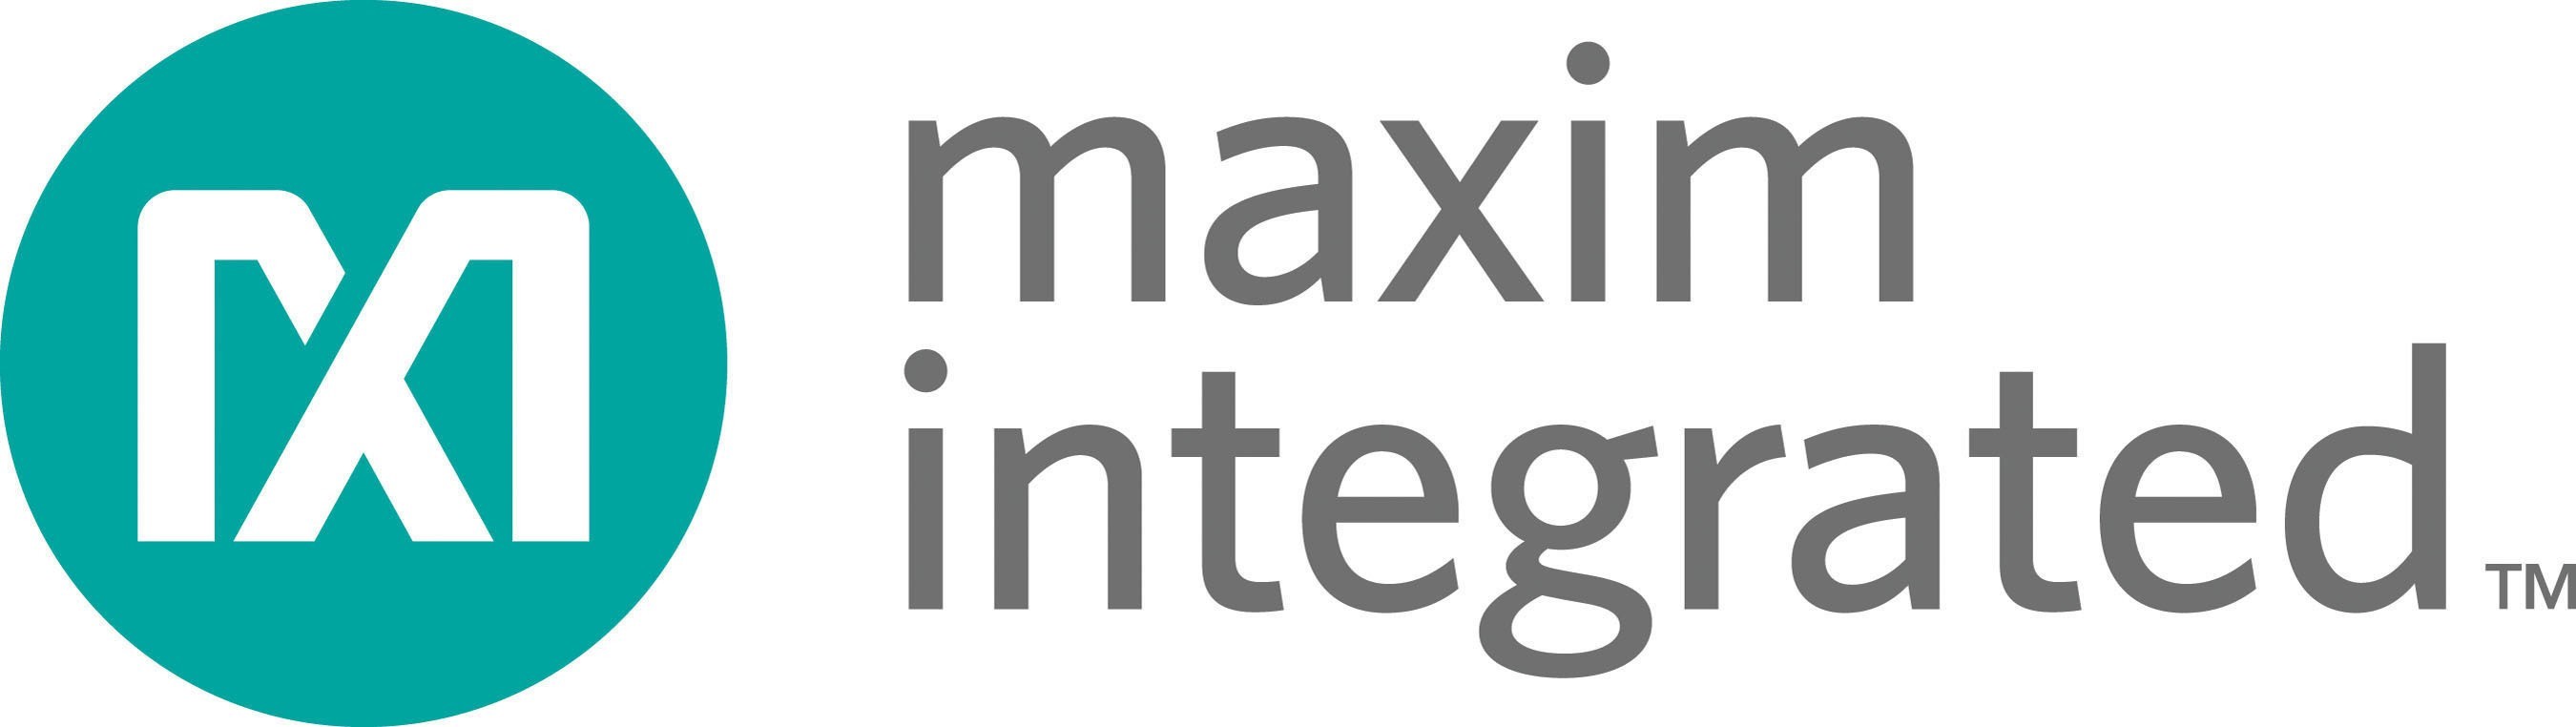 Maxim Integrated™